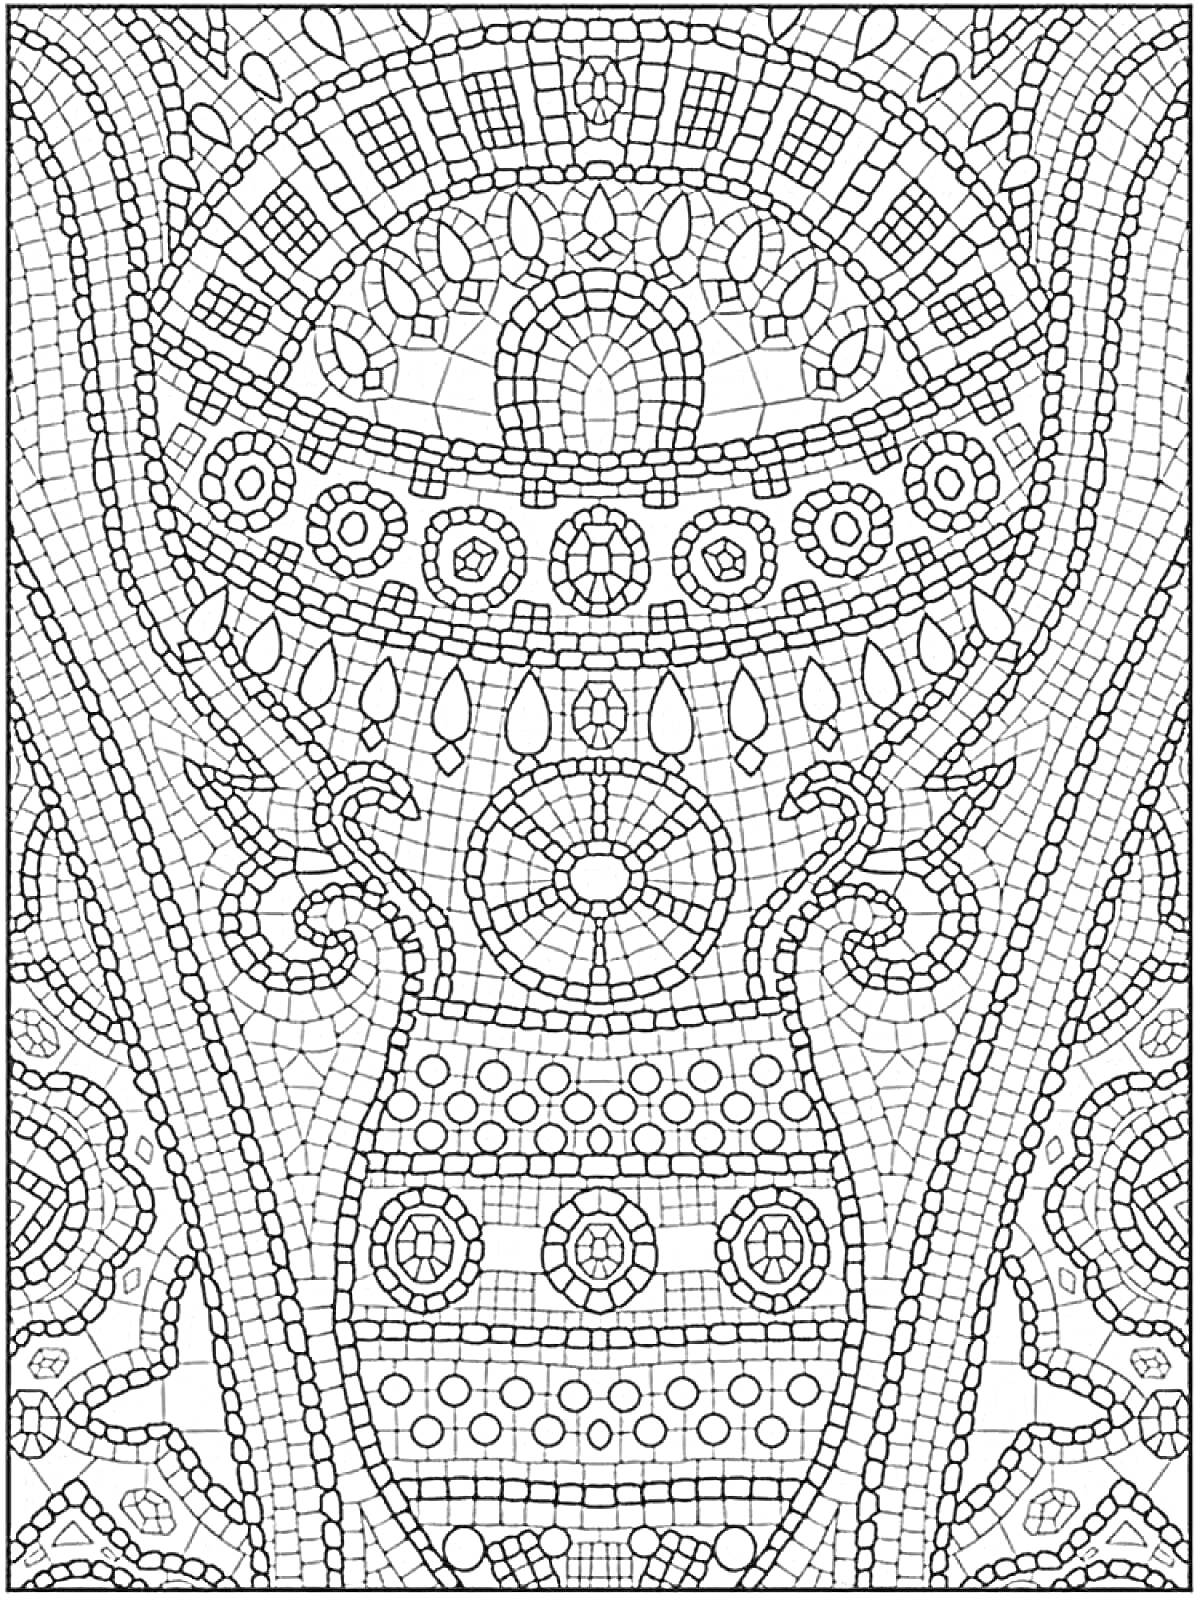 Мозаика с разнообразными геометрическими узорами, включая полукруги, окружности, дуги и квадратные элементы